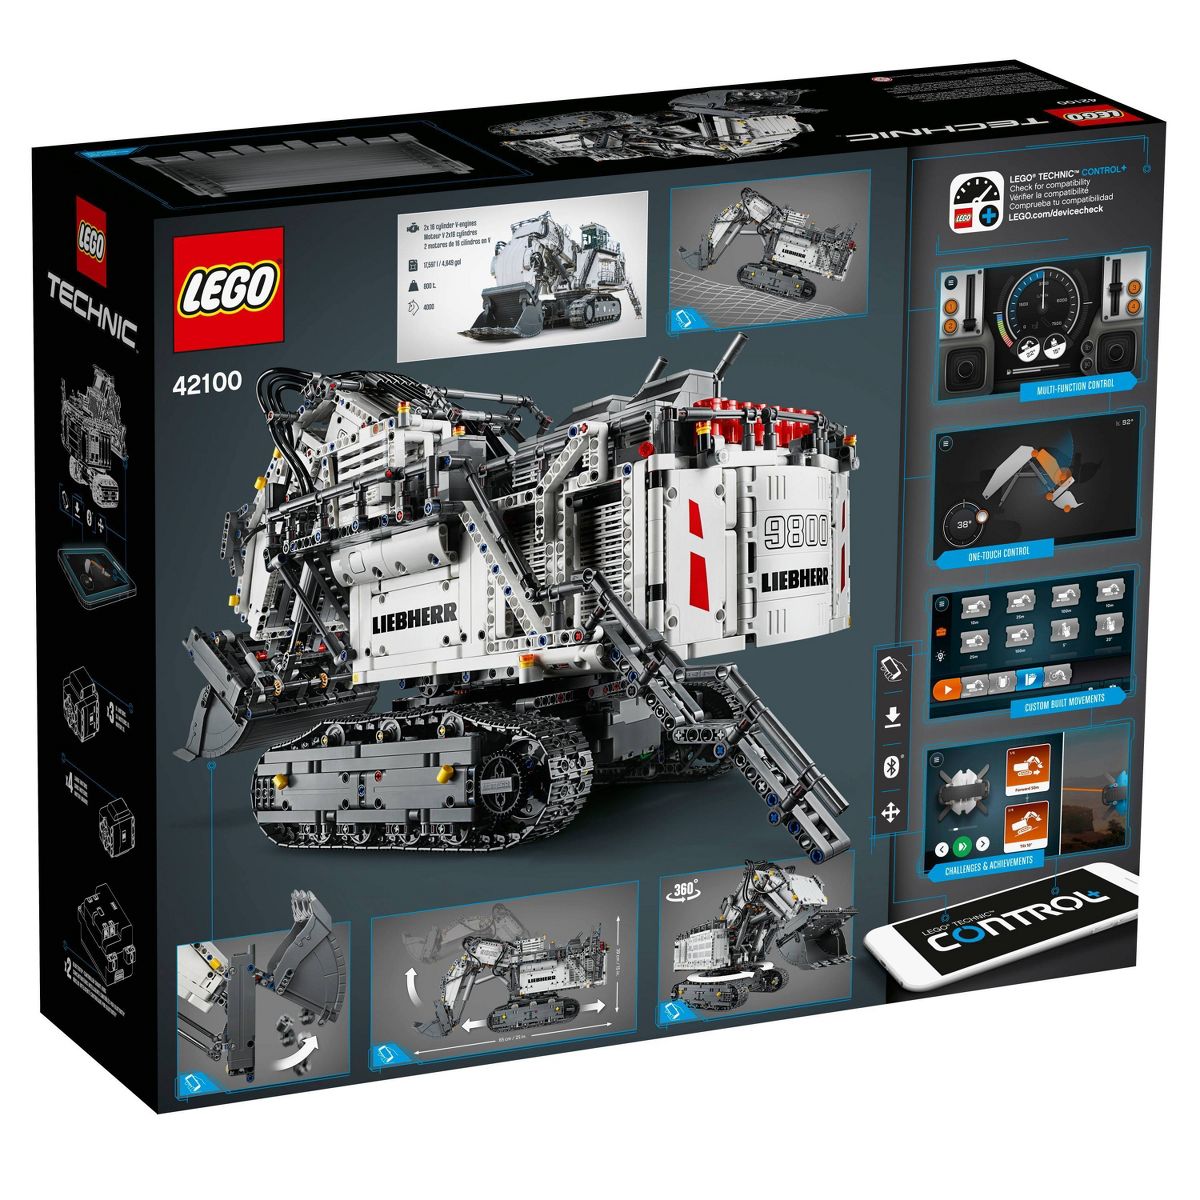 레고 42100 립헬 R 9800 엑스케베이터(LEGO Technic Liebherr R 9800 Excavator)